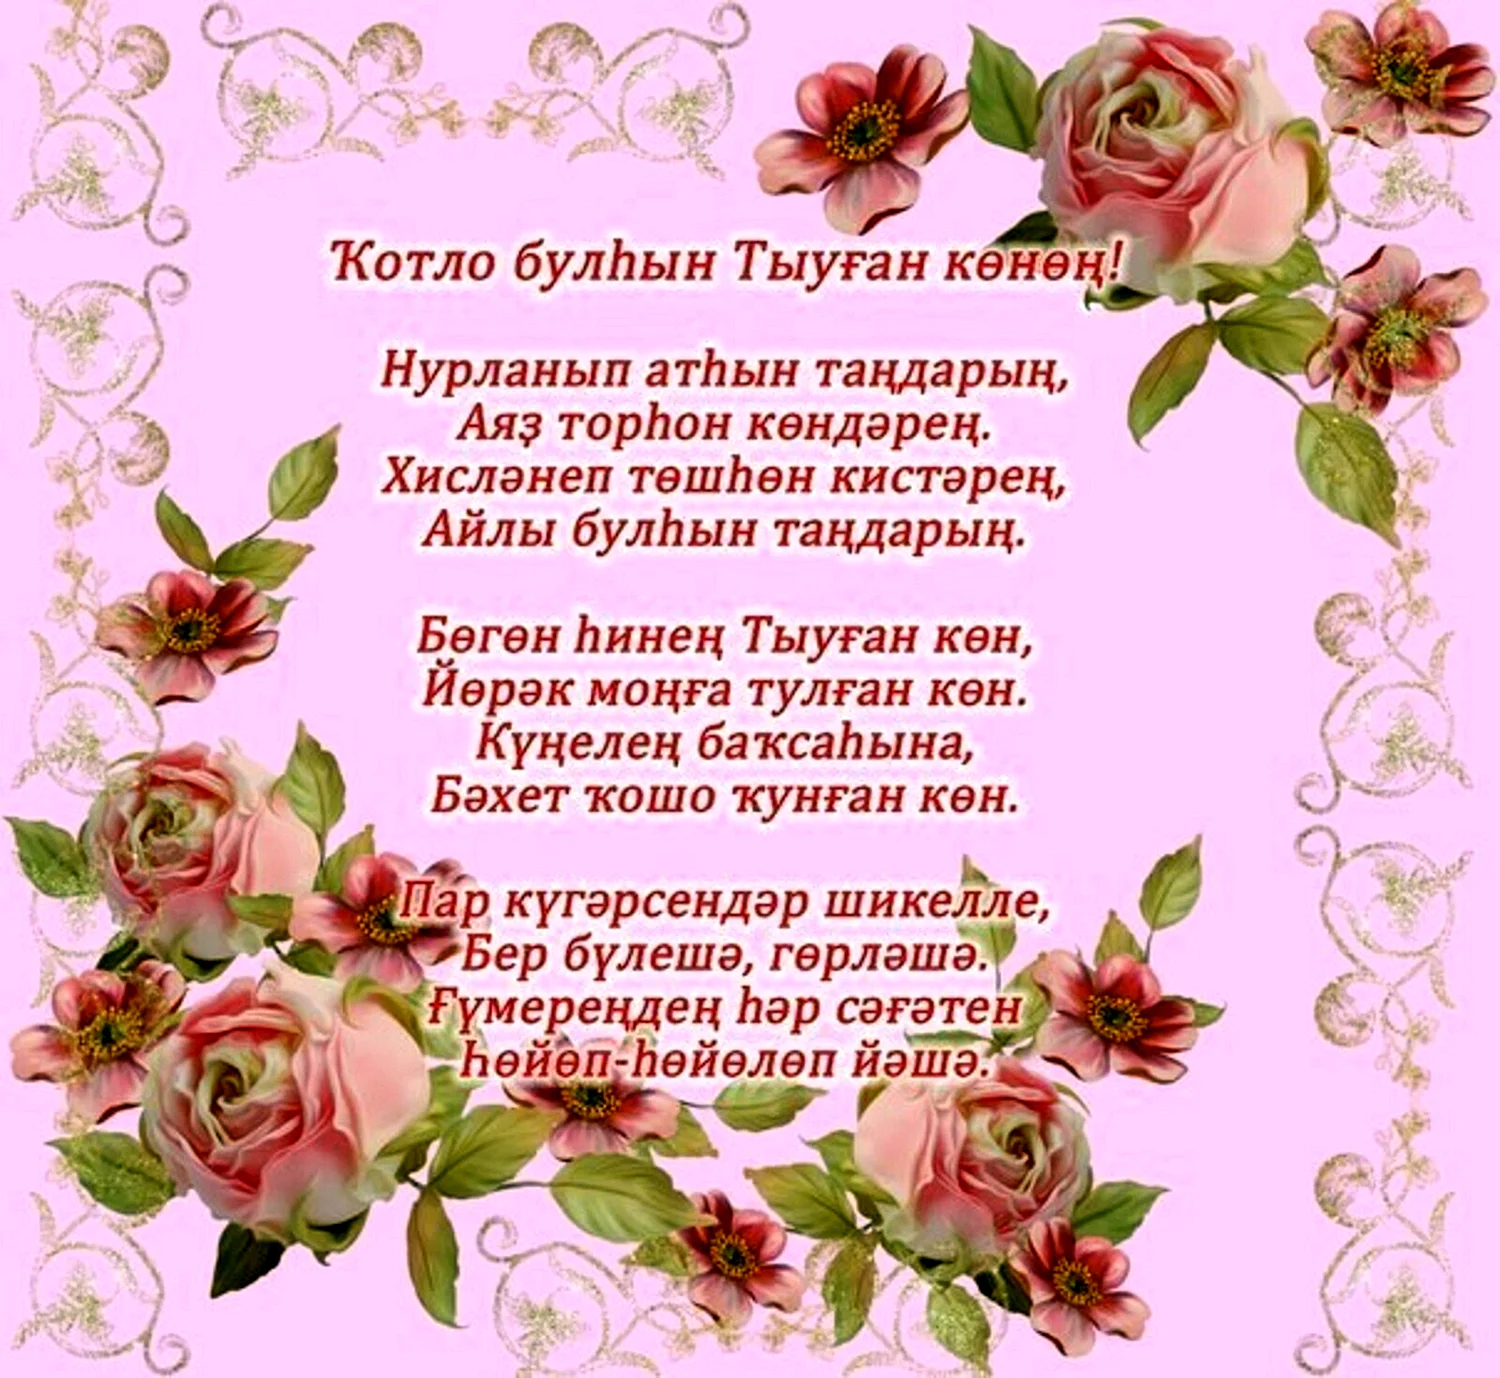 Ответы security58.ru: Как поздравить с днем рождения на башкирском языке